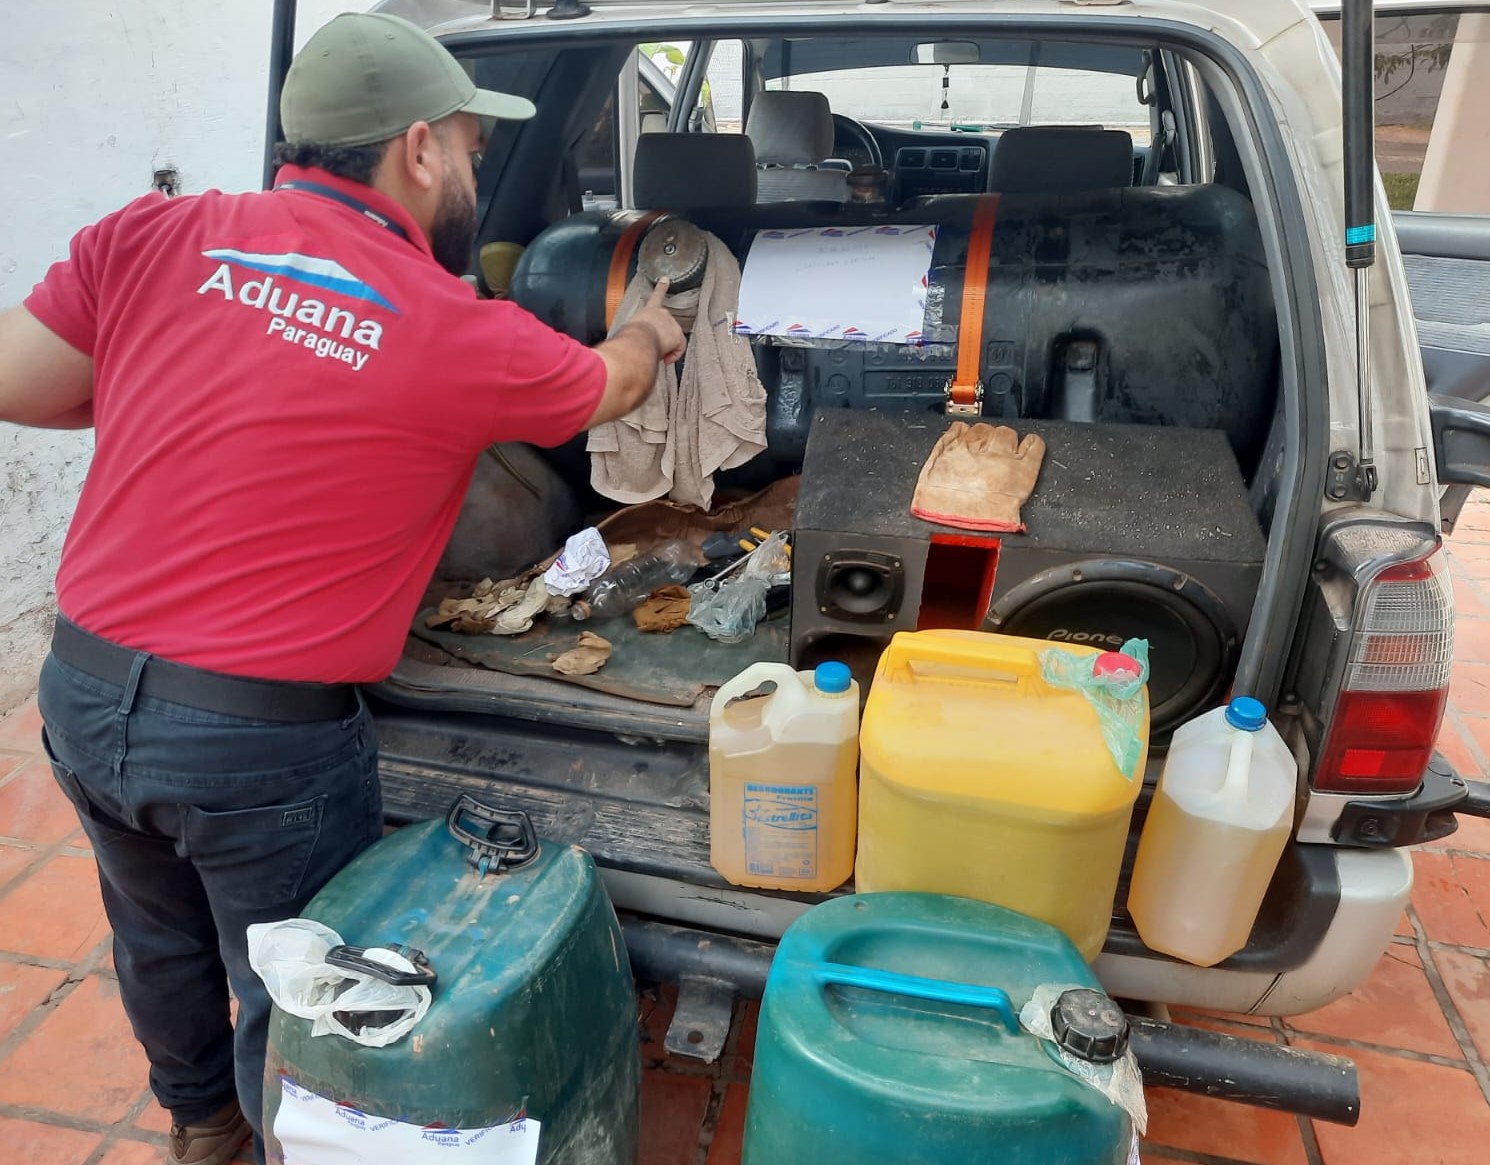 Cae camioneta con 470 litros de combustible en Vista Alegre e incautan 81 plantas florales de ingreso irregular en Hernandarias